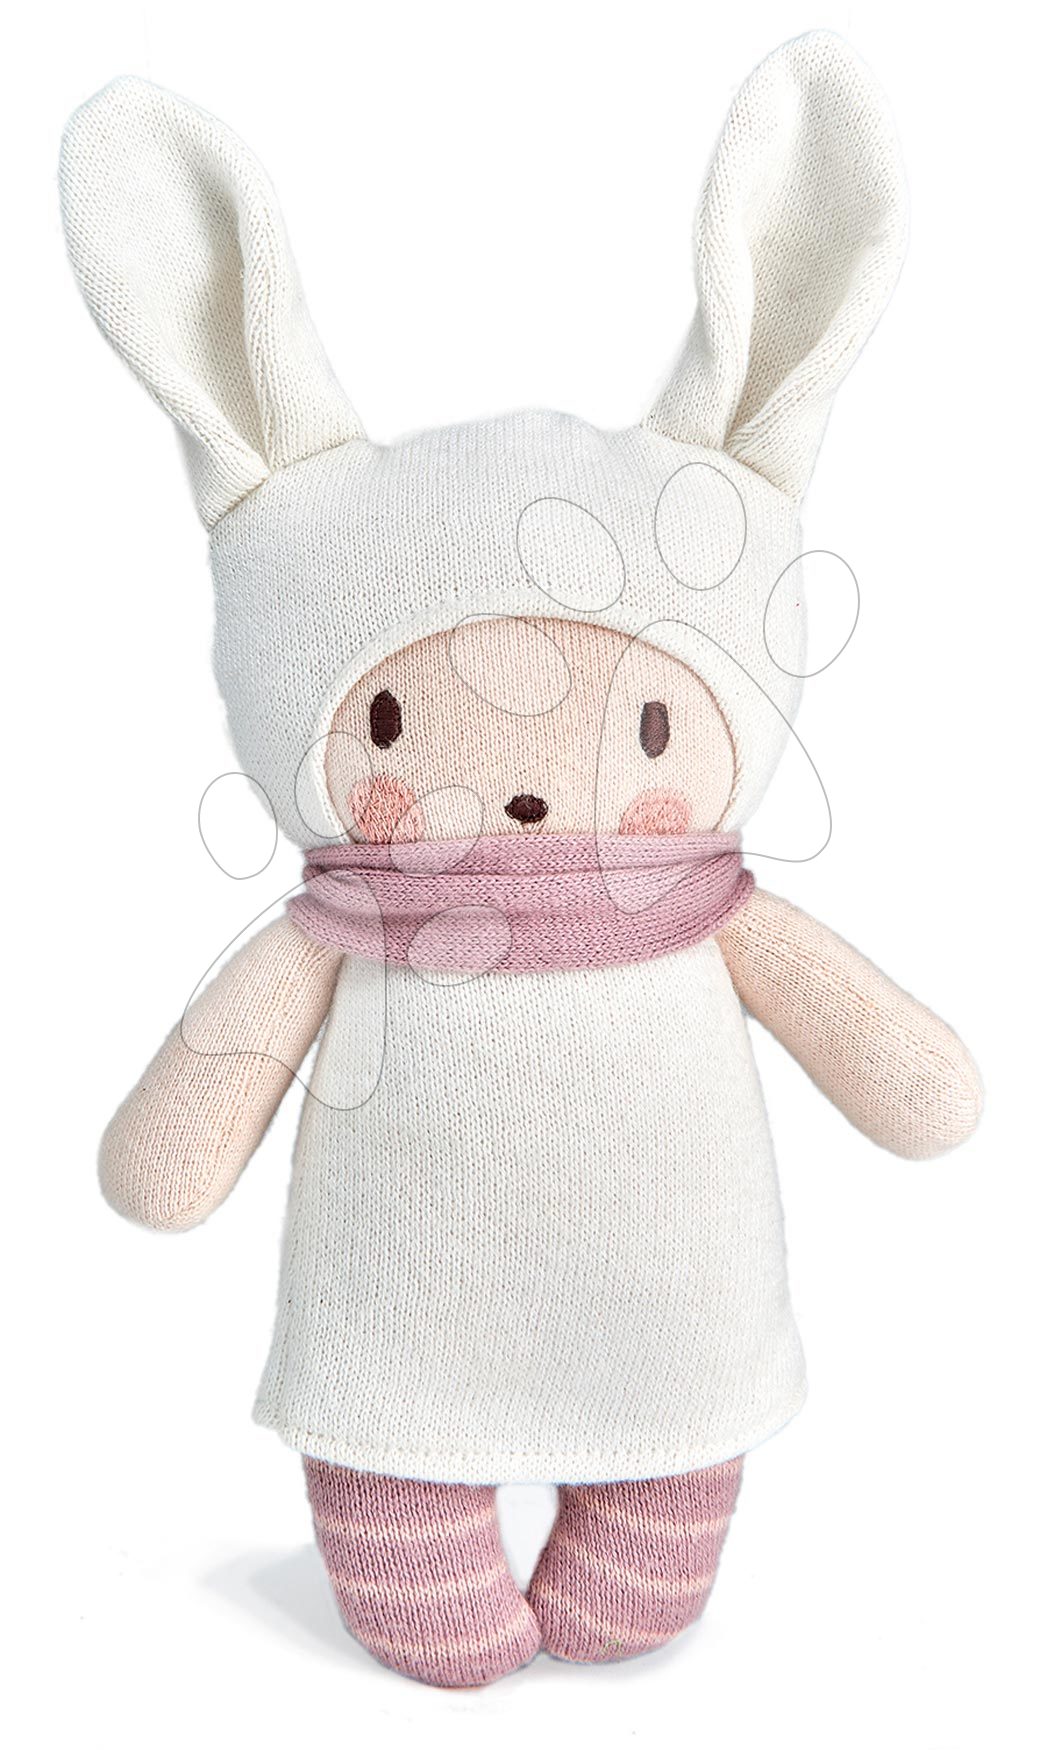 Kötött játékbaba rózsaszín Baby Baba Knitted Doll Threadbear 24 cm puha pamutból ajándékcsomagolásban 0 hó-tól